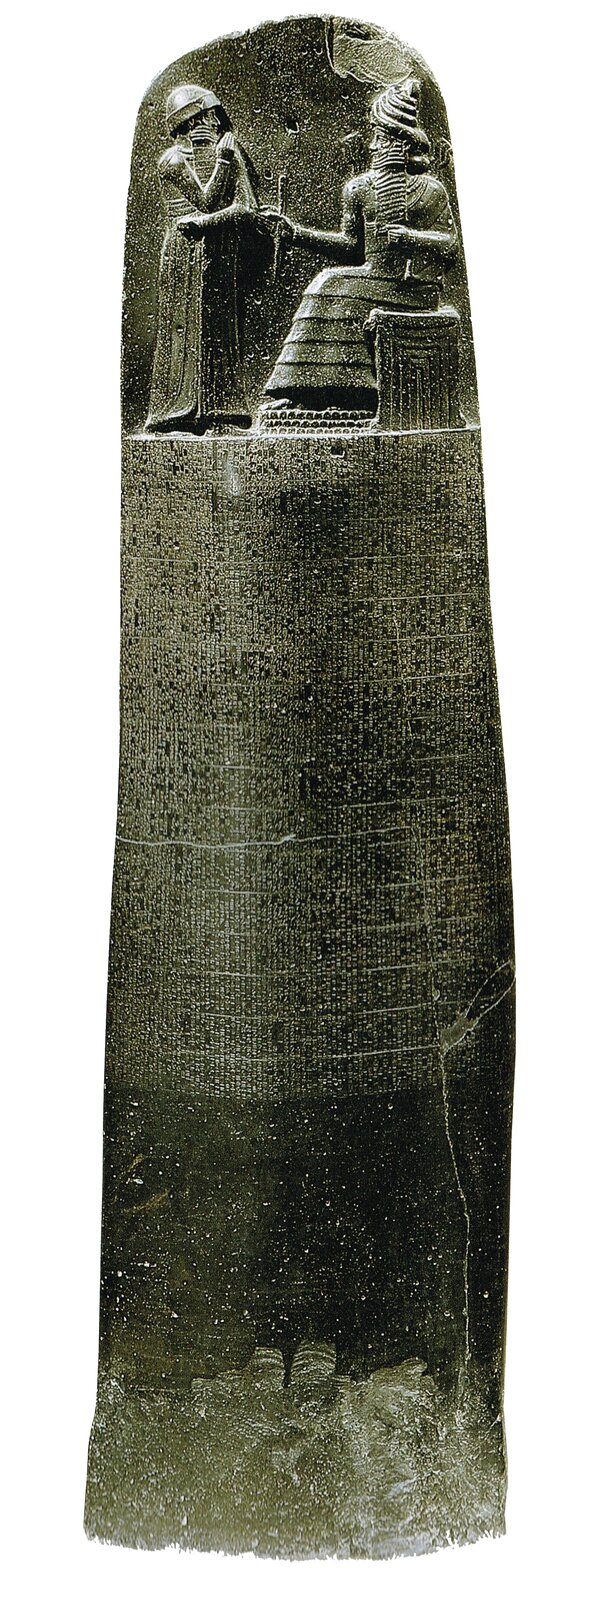 Prawa Hammurabiego zostały wyryte na kamiennym słupie, który obecnie znajduje się w Luwrze w Paryżu Prawa Hammurabiego zostały wyryte na kamiennym słupie, który obecnie znajduje się w Luwrze w Paryżu Źródło: Musée du Louvre, licencja: CC BY 3.0.